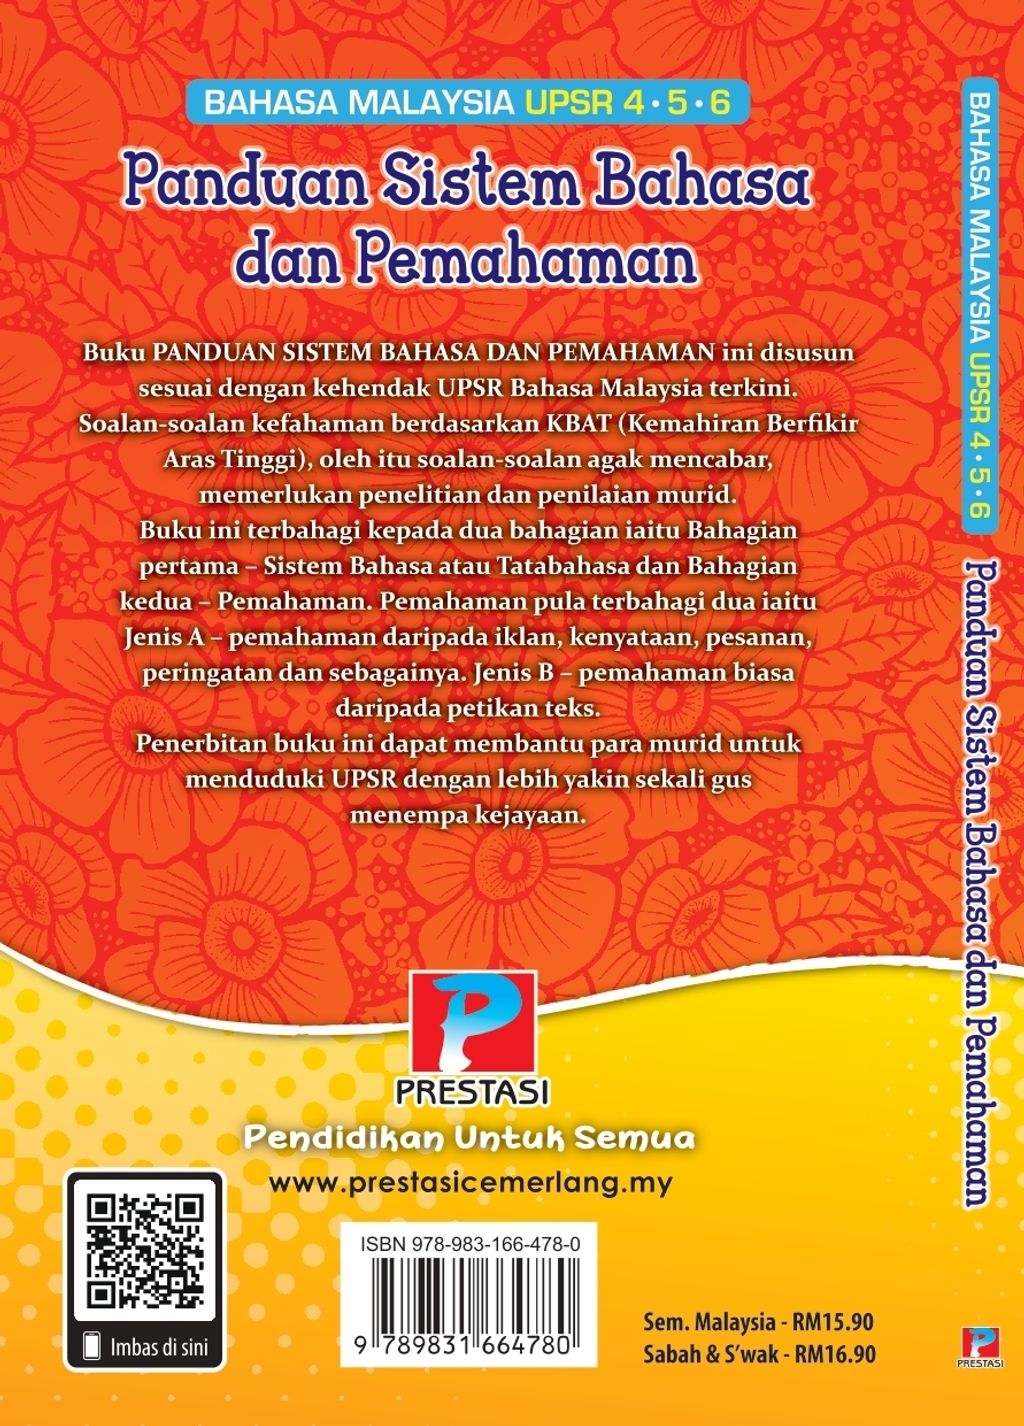 2020 (EBOOK) Cover Panduan Sistem Bhs & Pmhmn_page-0001 (1).jpg